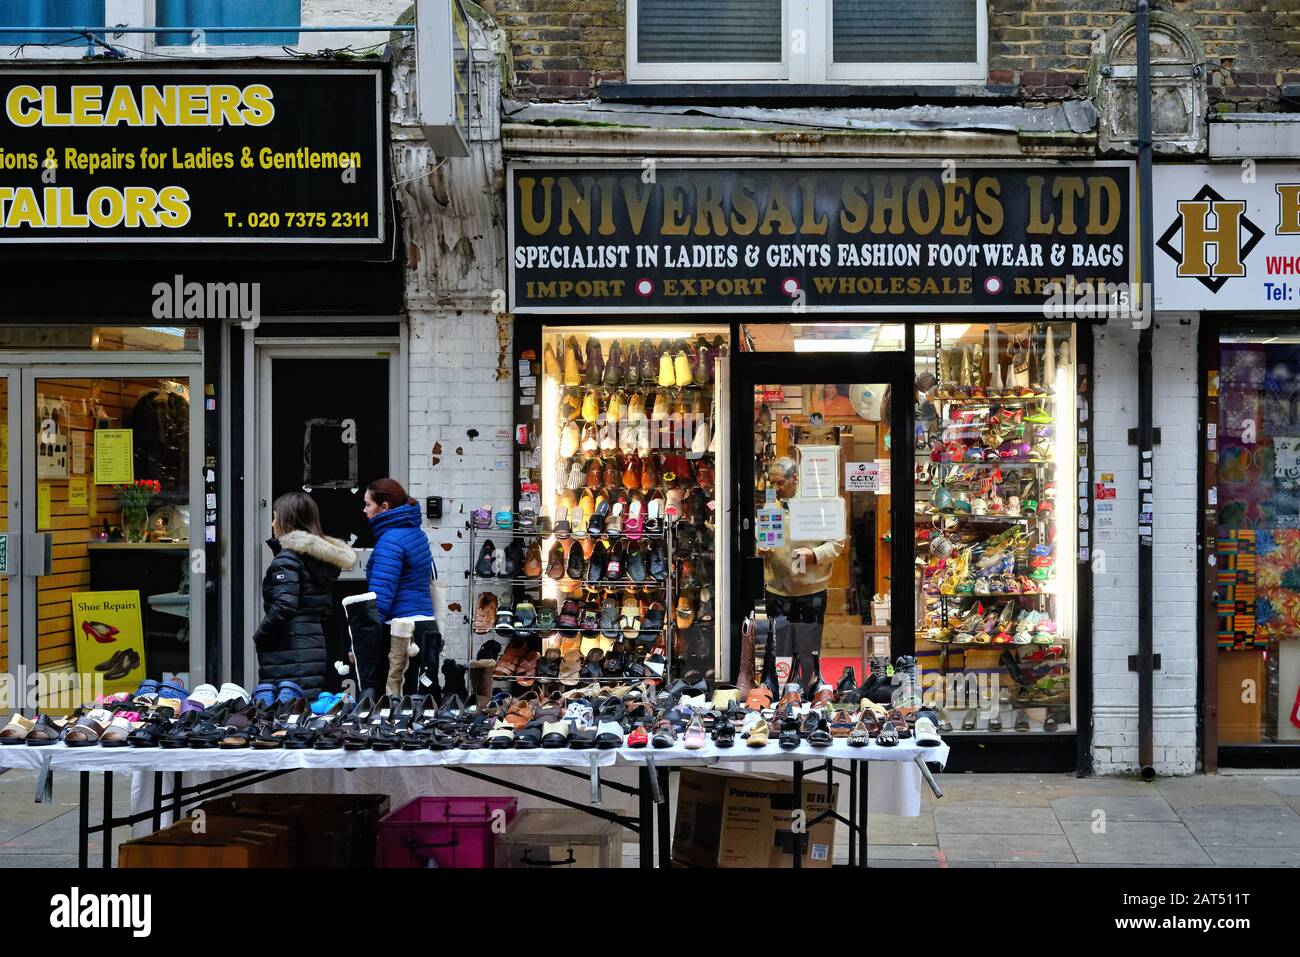 Die Schaufensteransicht eines Schuhladens im alten Stil in der Wentworth Street Whitechapel East London England Großbritannien Stockfoto